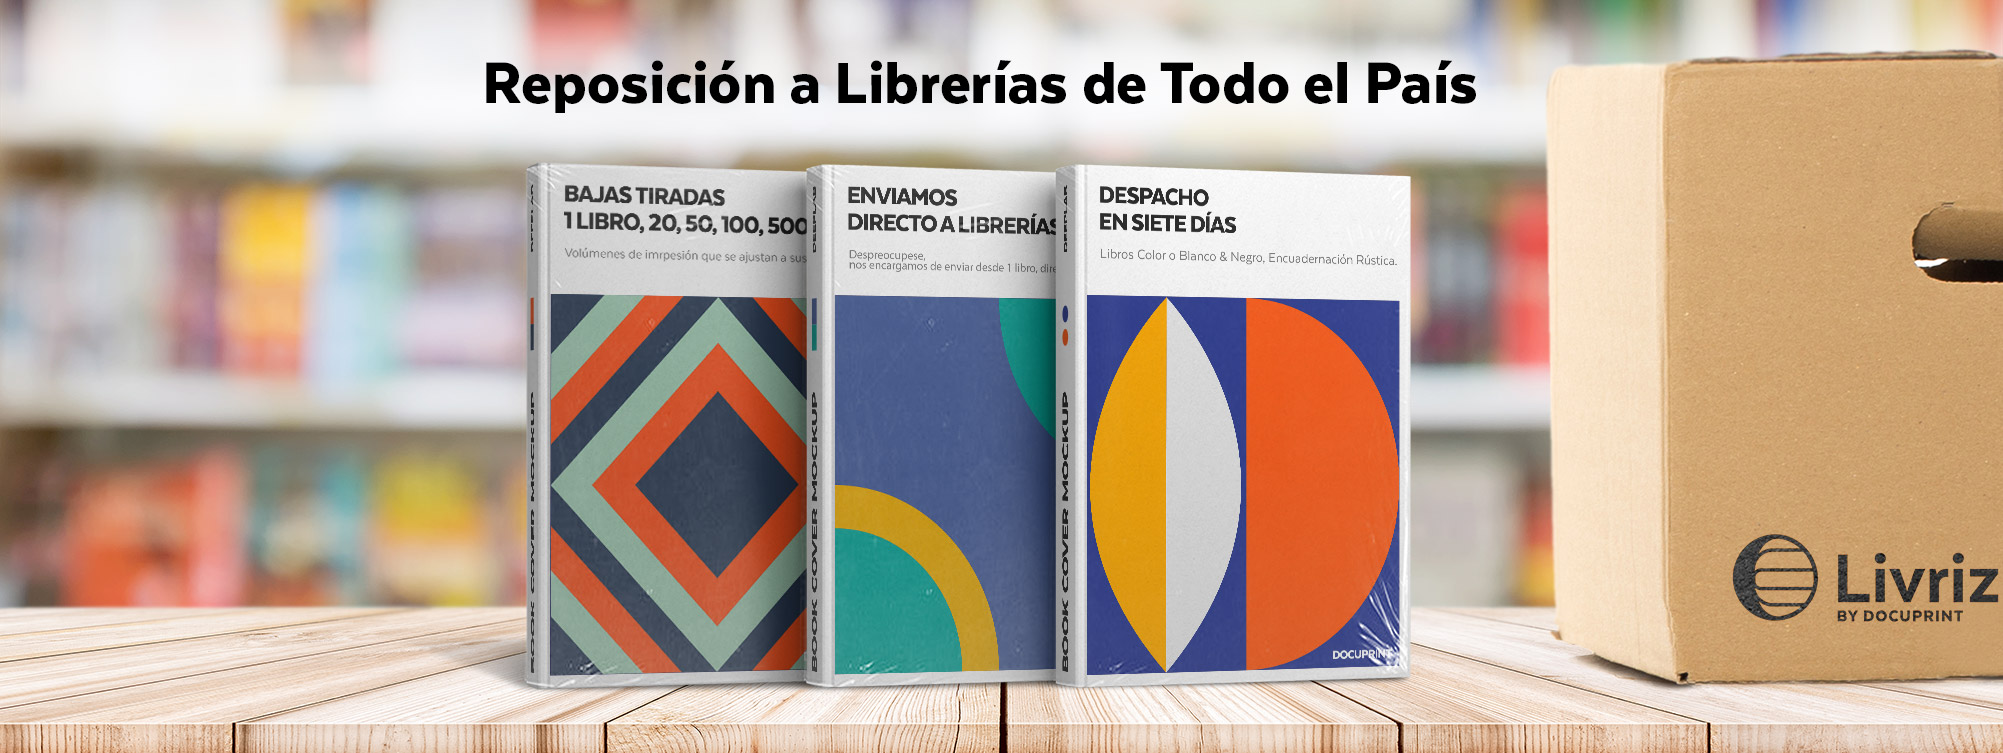 Reposición a Librerías de Todo el País